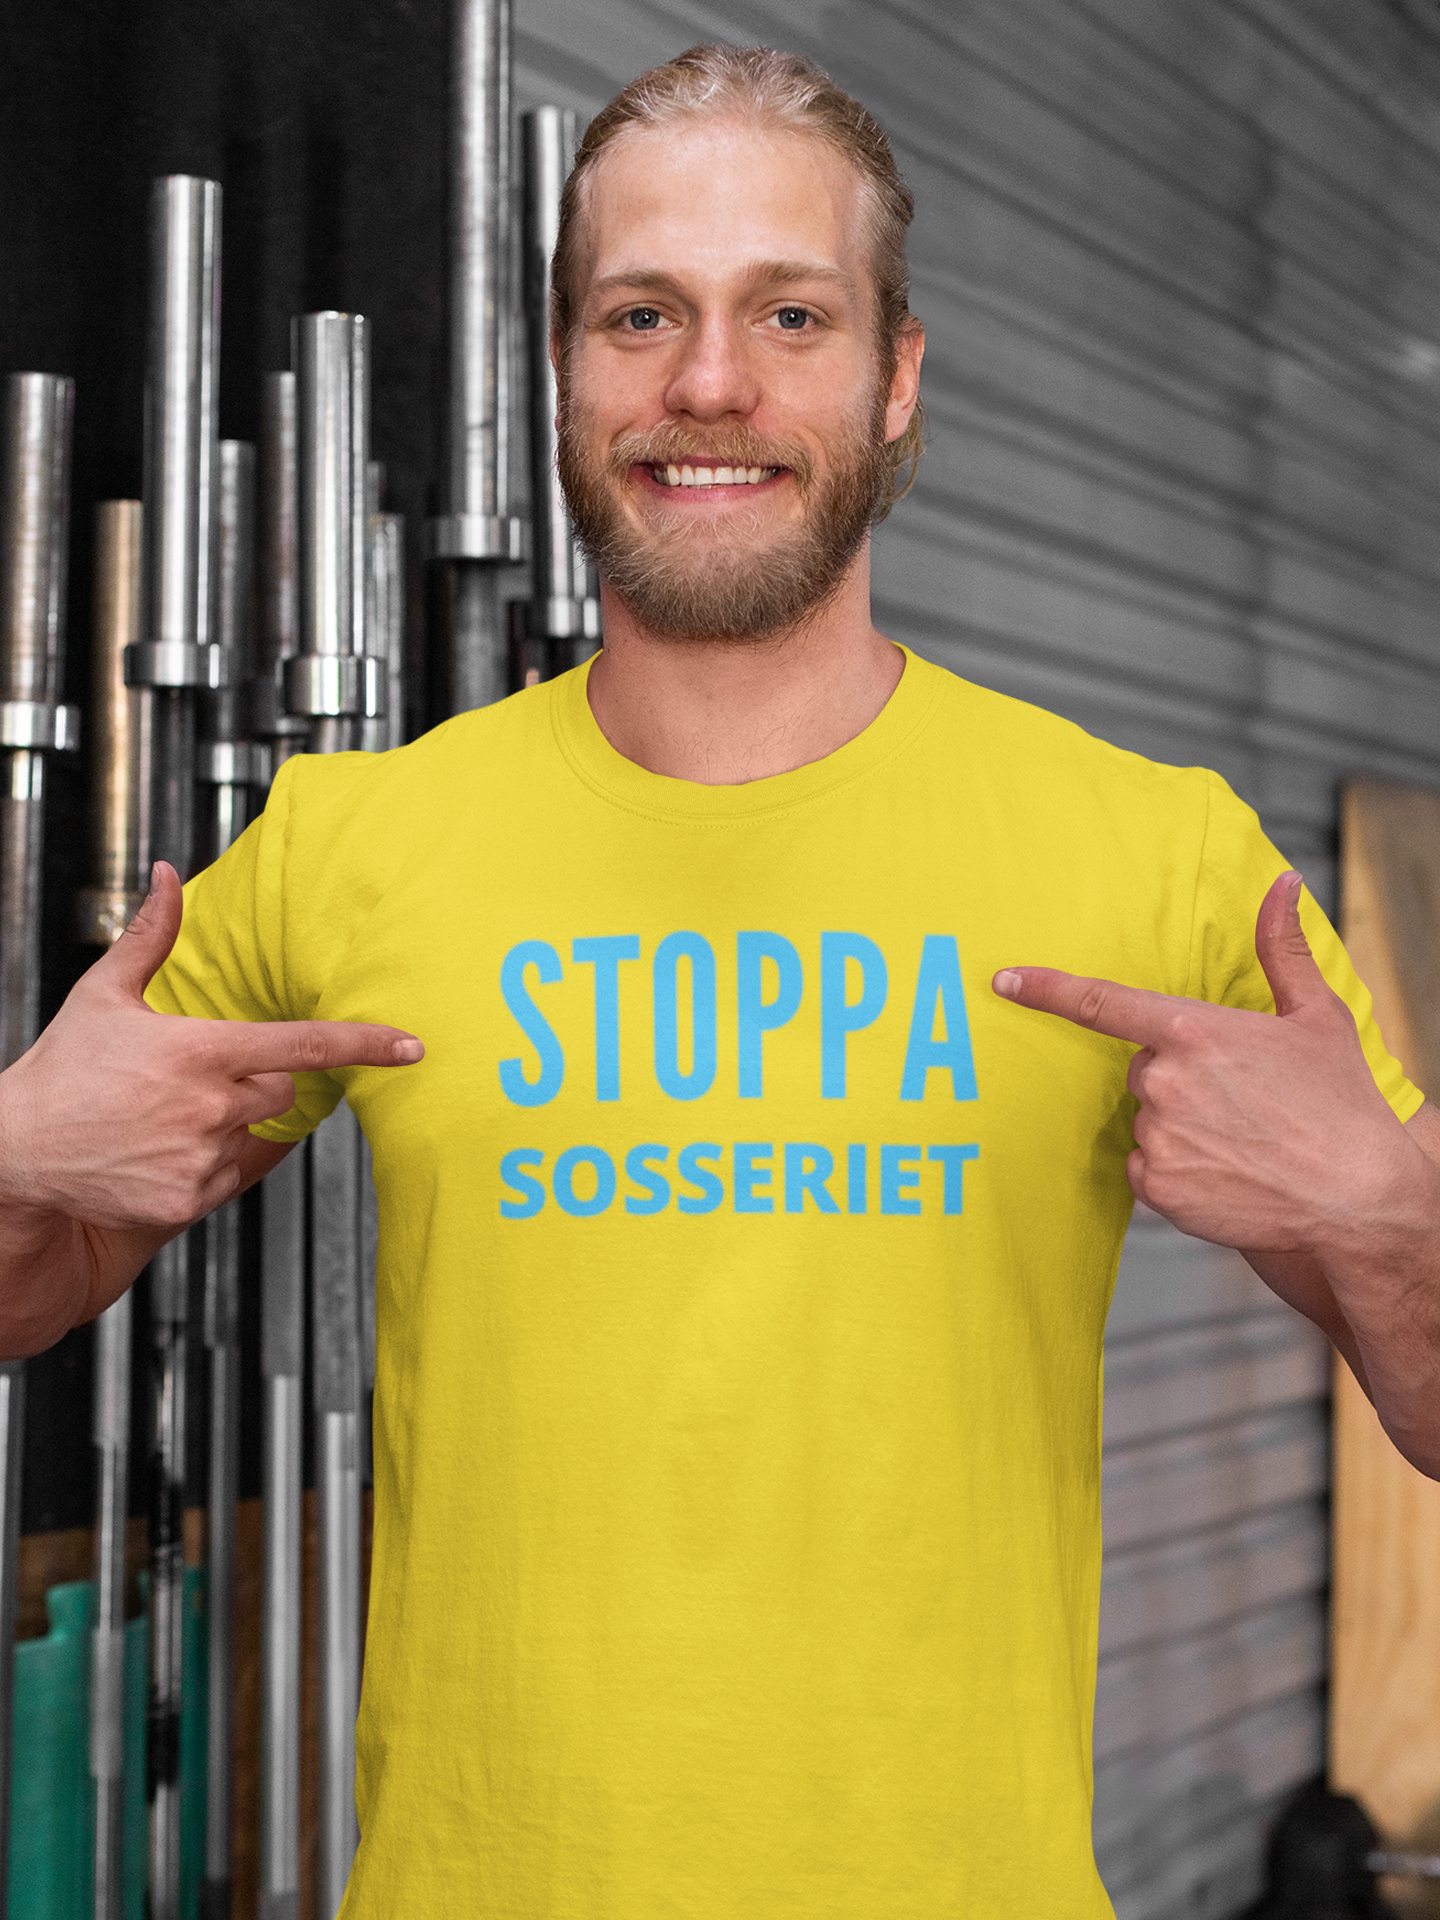 Stoppa Sosseriet Tshirts i mängder. Sveriges största utbud av färger med text Stoppa Sosseriet